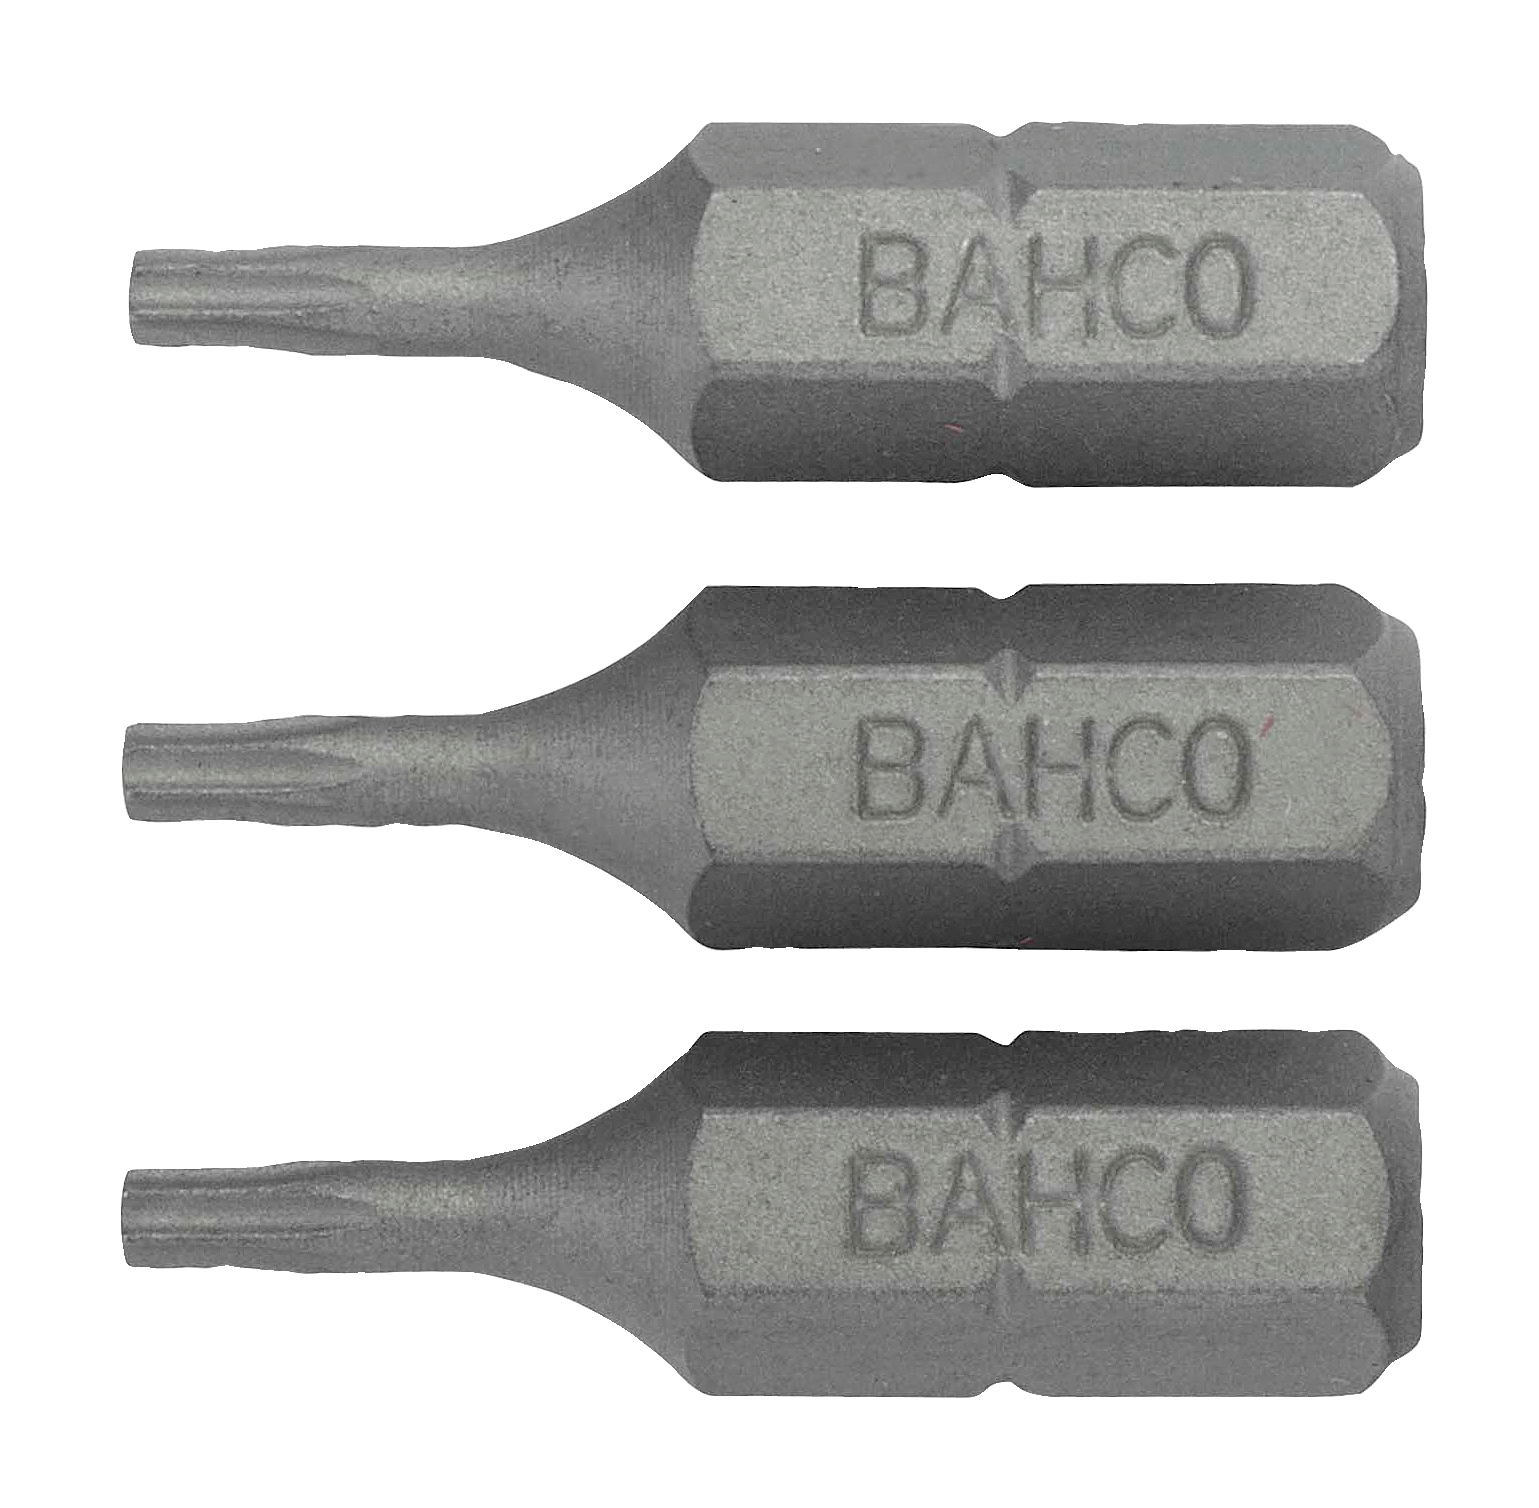 картинка Стандартные биты для отверток Torx® TR, 25 мм BAHCO 59S/TR9-3P от магазина "Элит-инструмент"